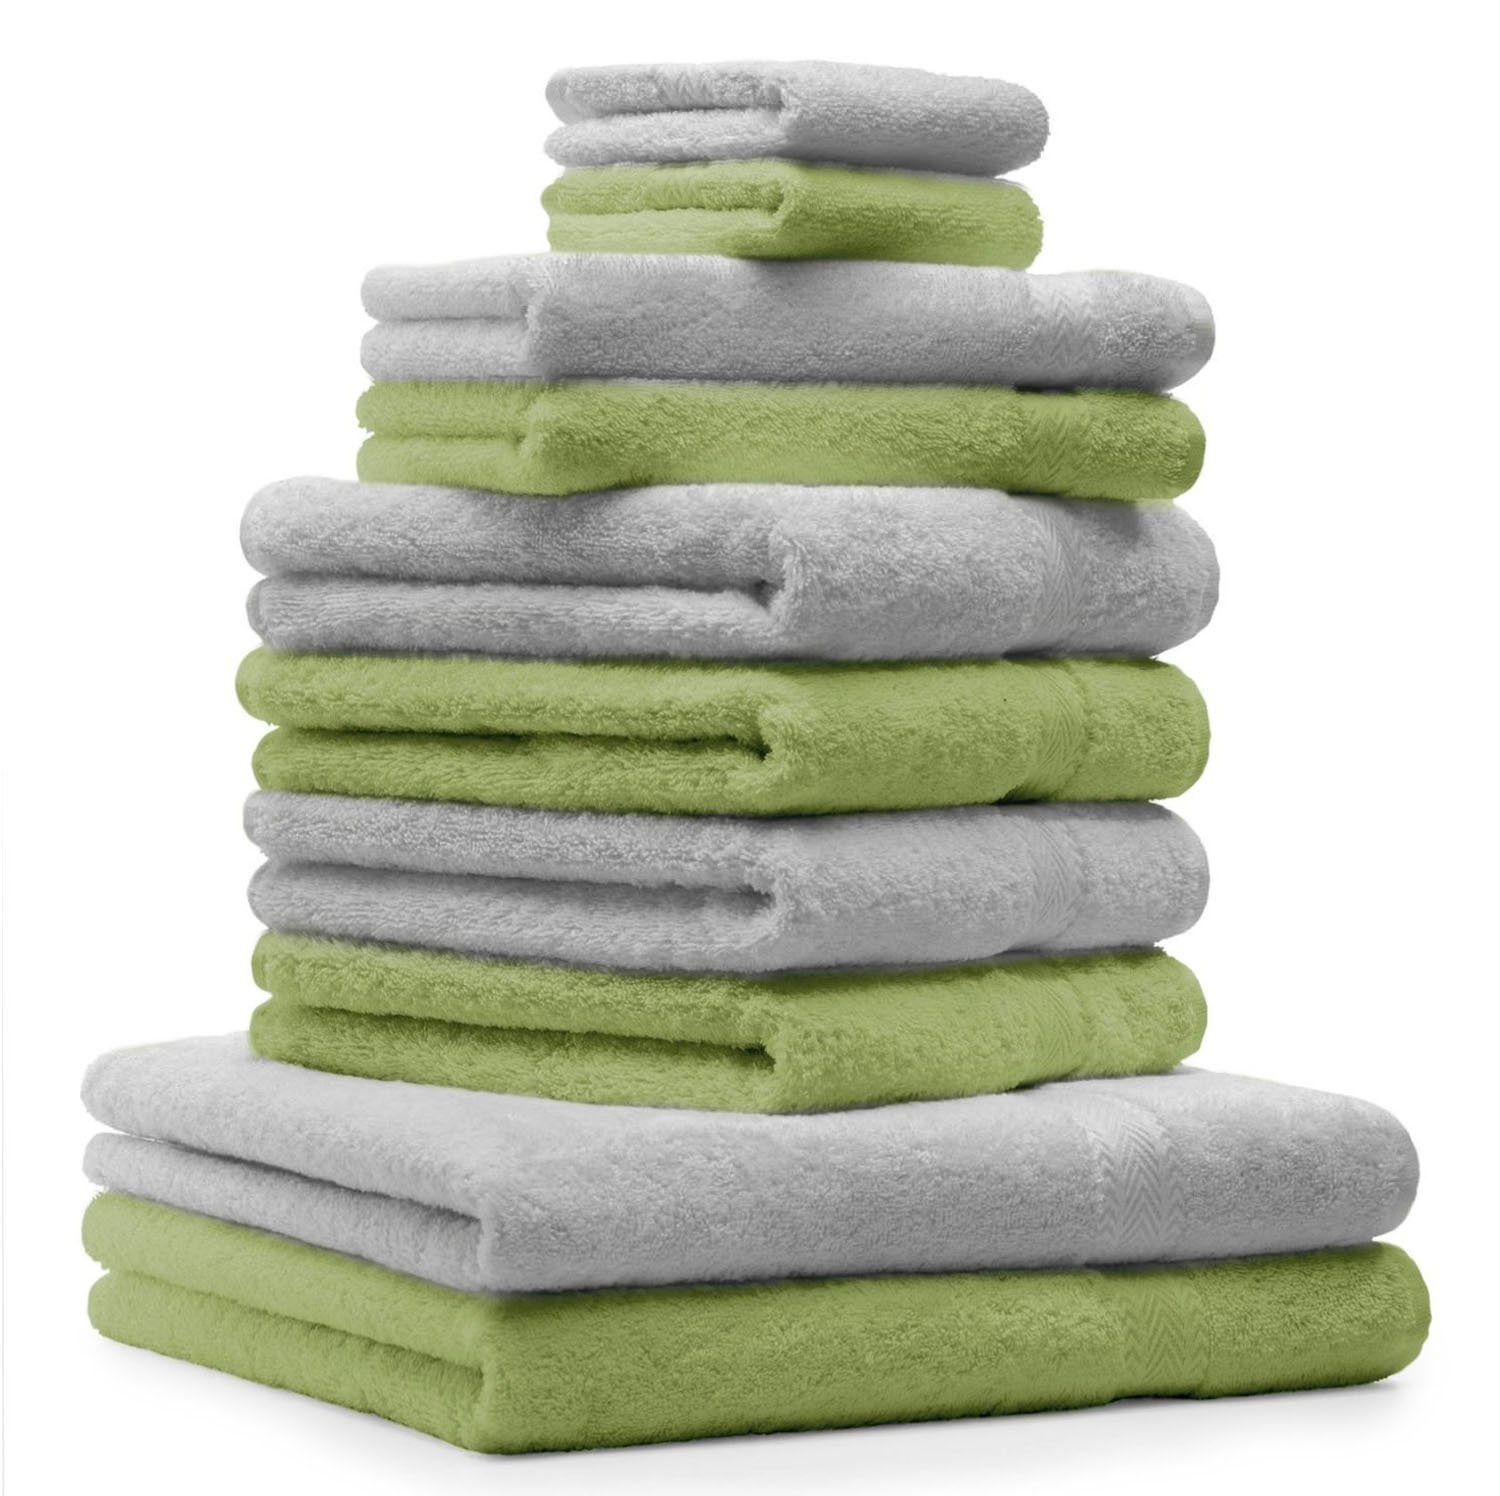 2 Premium Baumwolle Grün, Gästetücher 100% Baumwolle 4 Apfel Silber Waschhandschuhe Handtuch-Set & 2 Handtücher 100% 2 Farbe Handtuch 10-TLG. Betz Grau Set Duschtücher